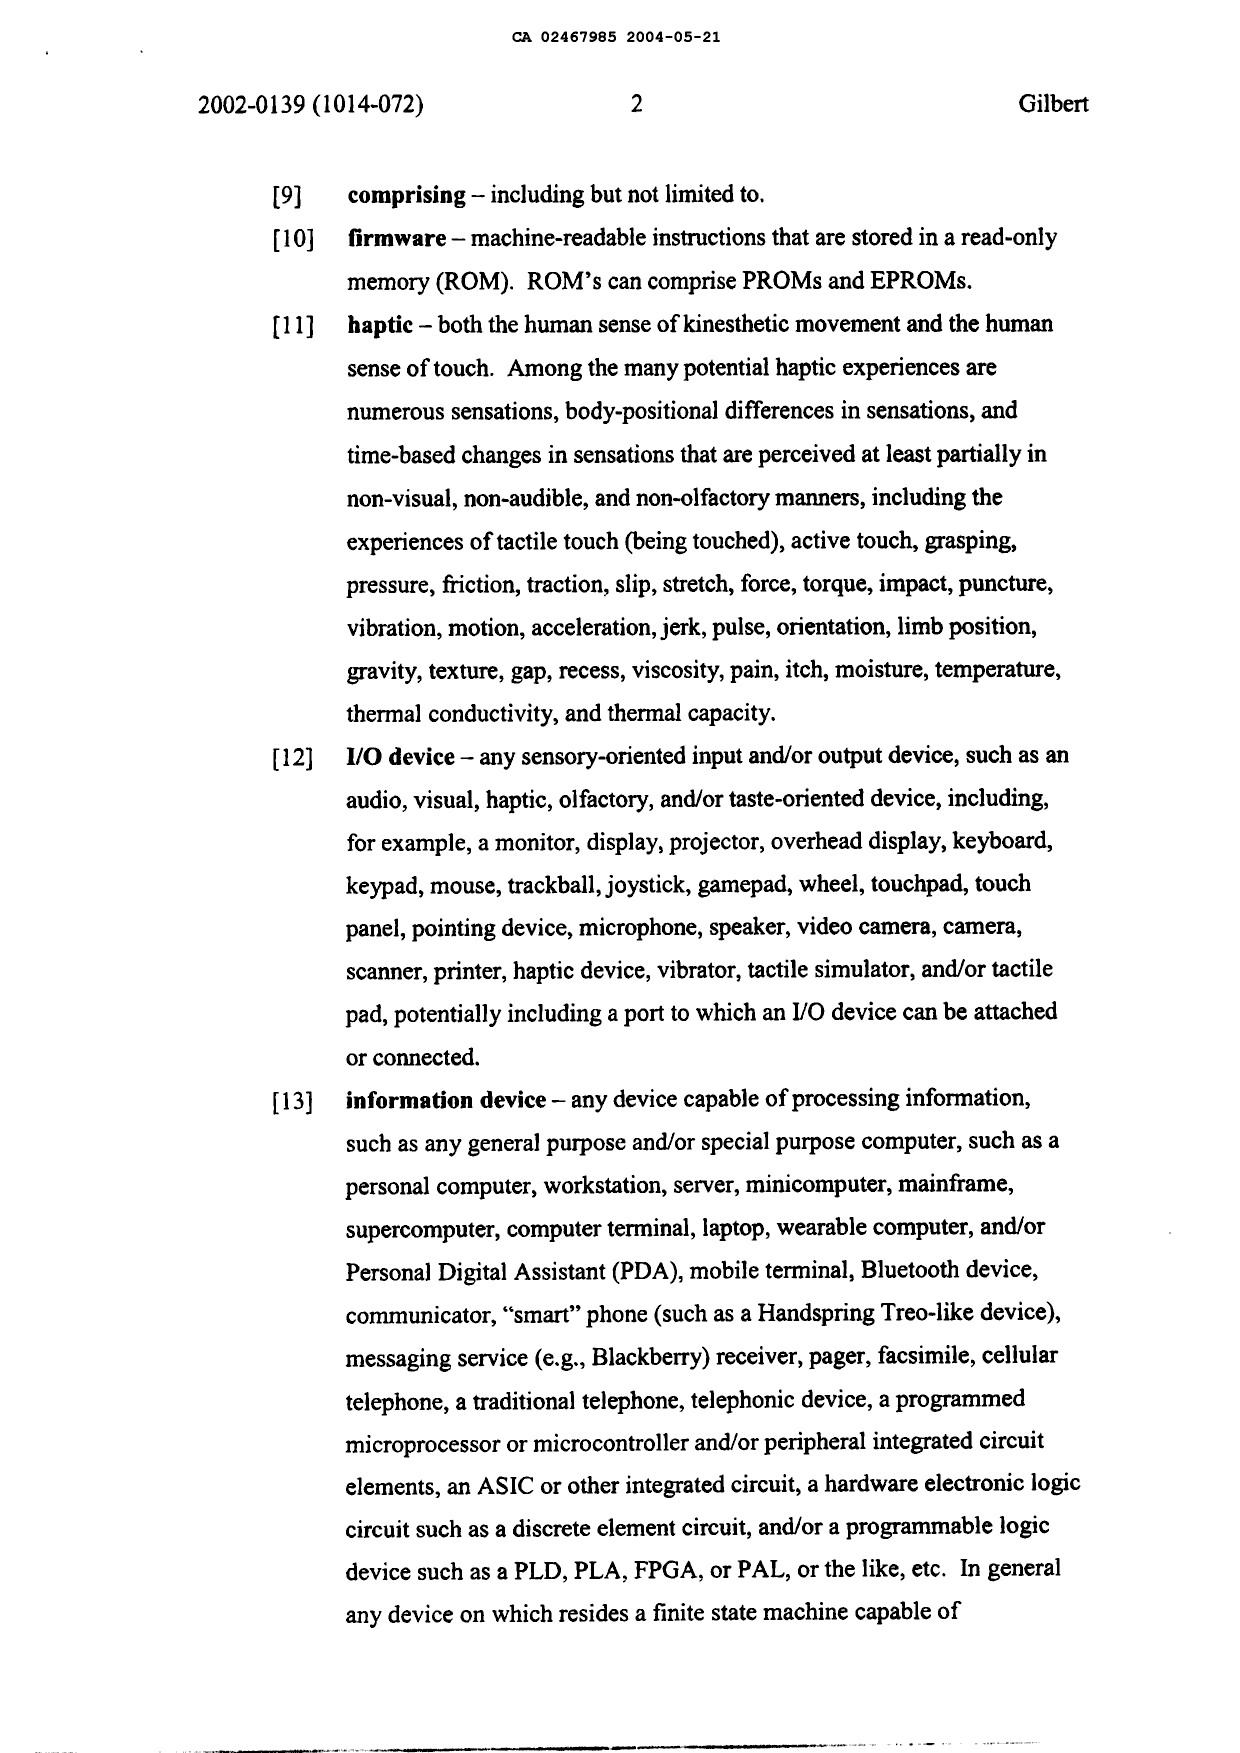 Canadian Patent Document 2467985. Description 20080103. Image 2 of 34